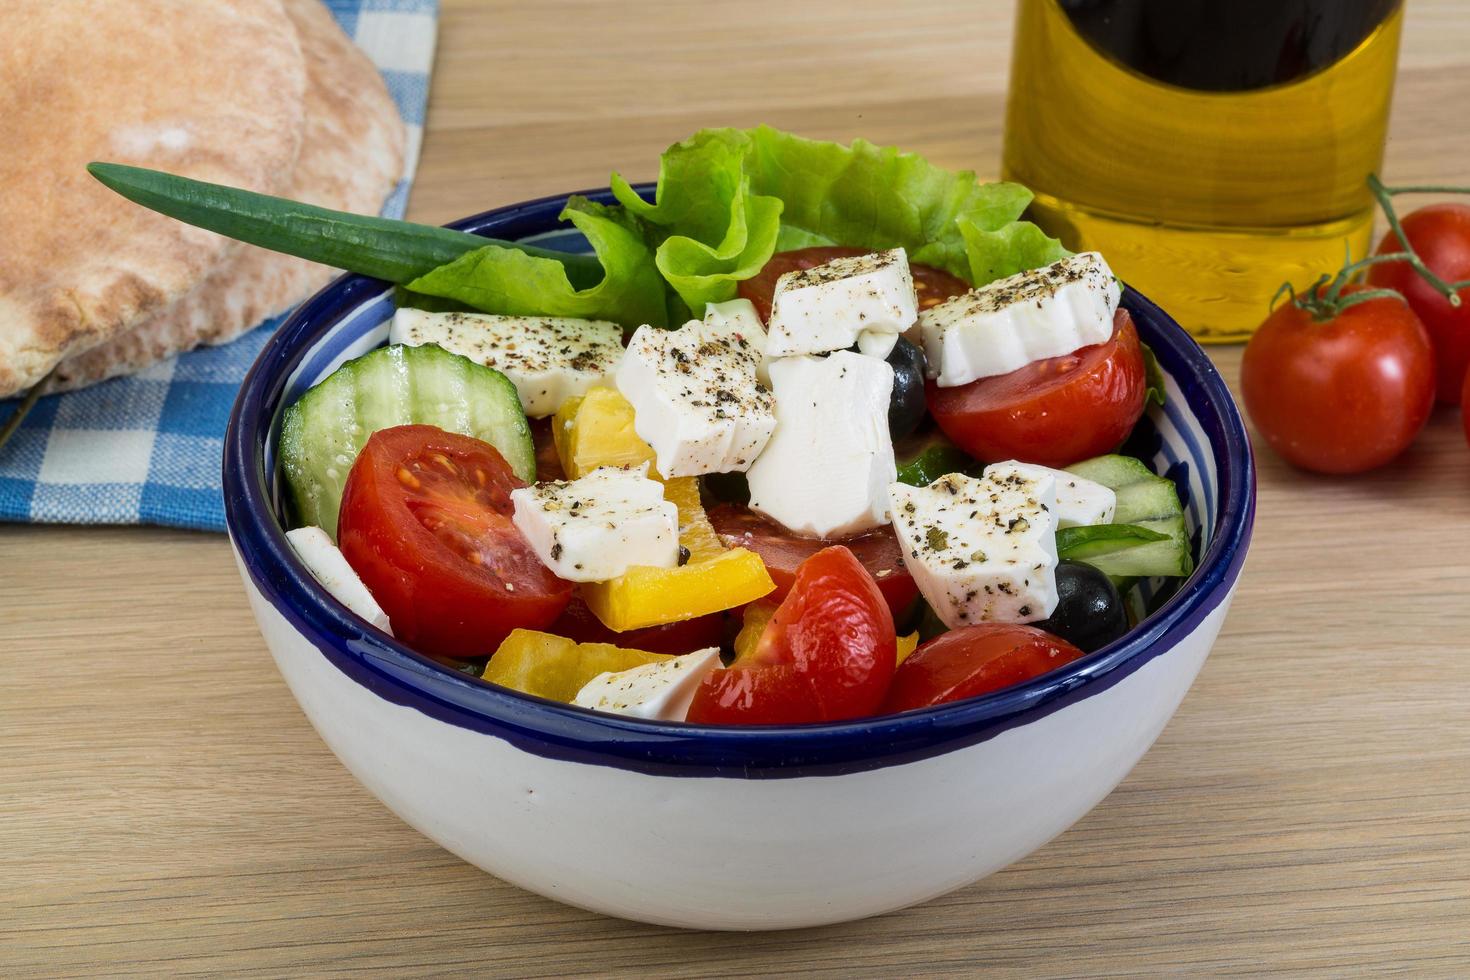 Grieks salade in een kom Aan houten achtergrond foto